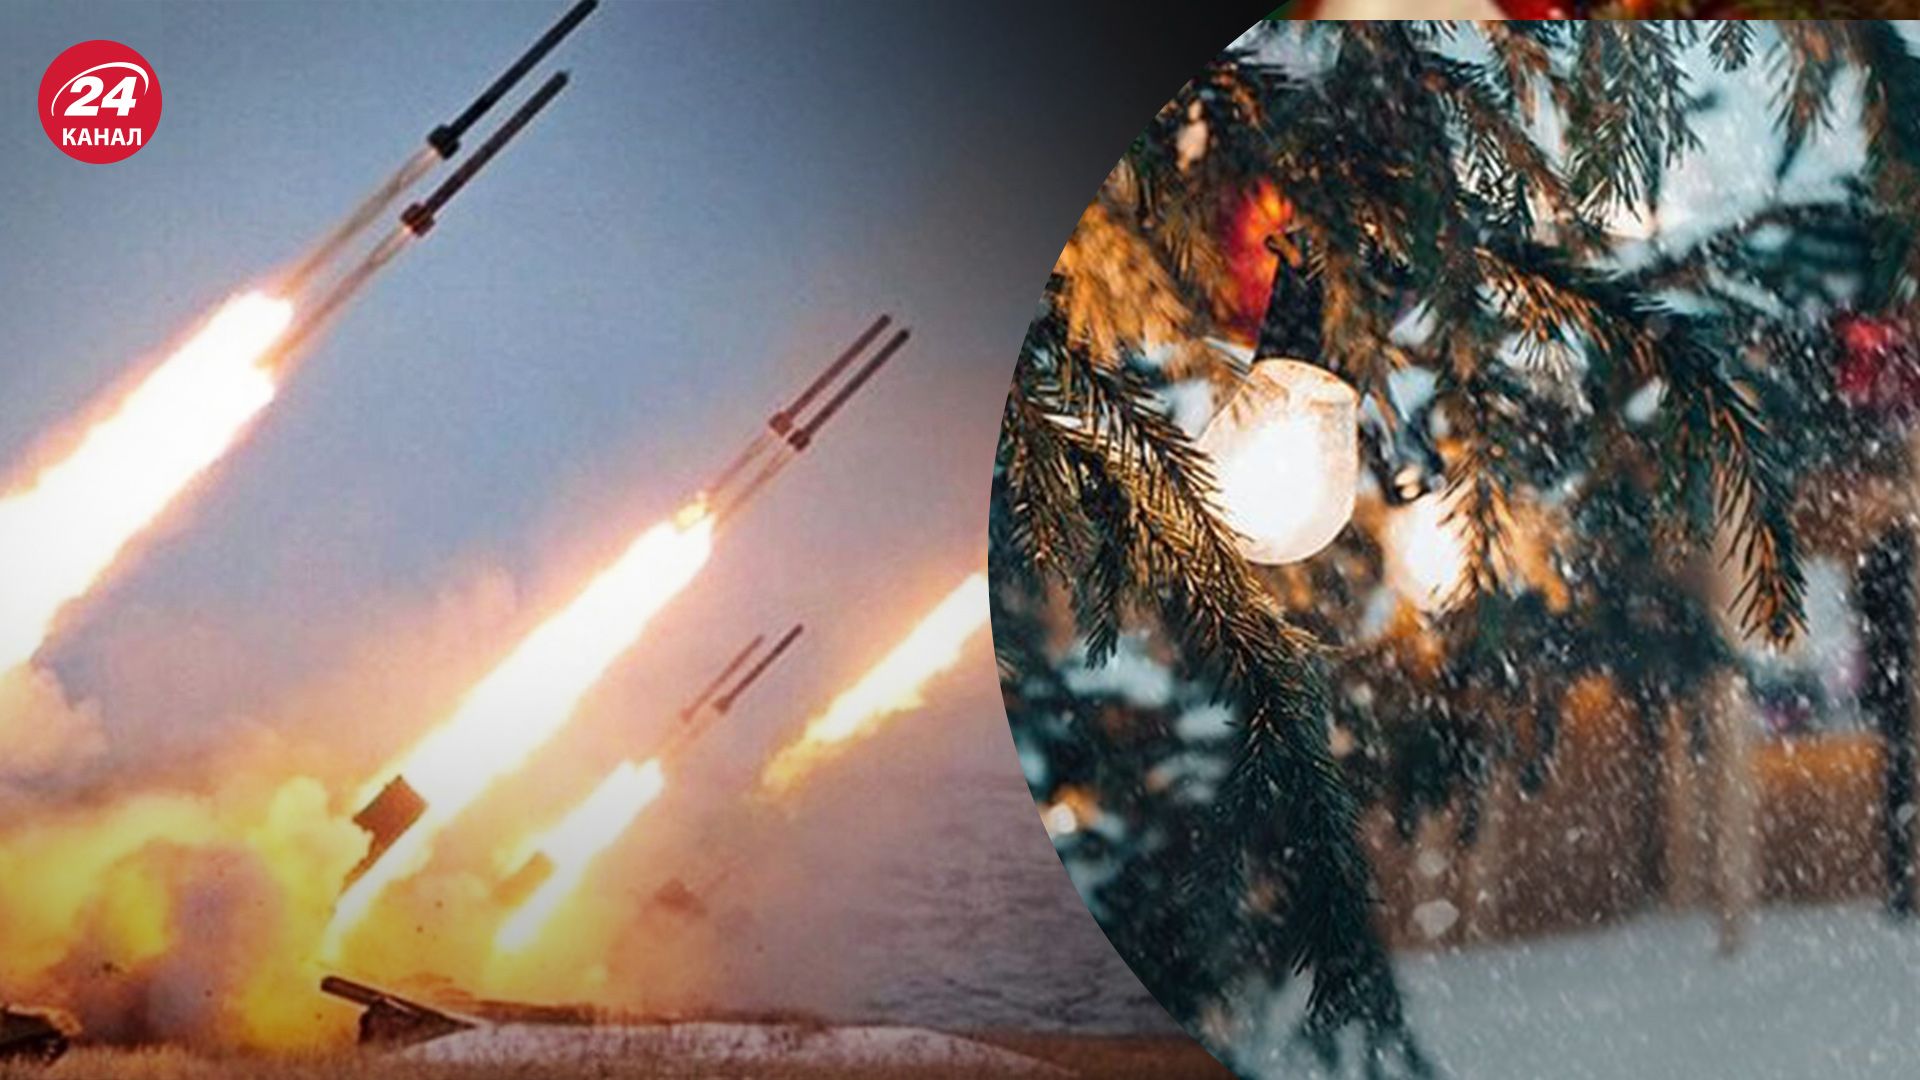 Обстрелы на Новый год - разведка сообщила о готовности сил ПВО - 24 Канал